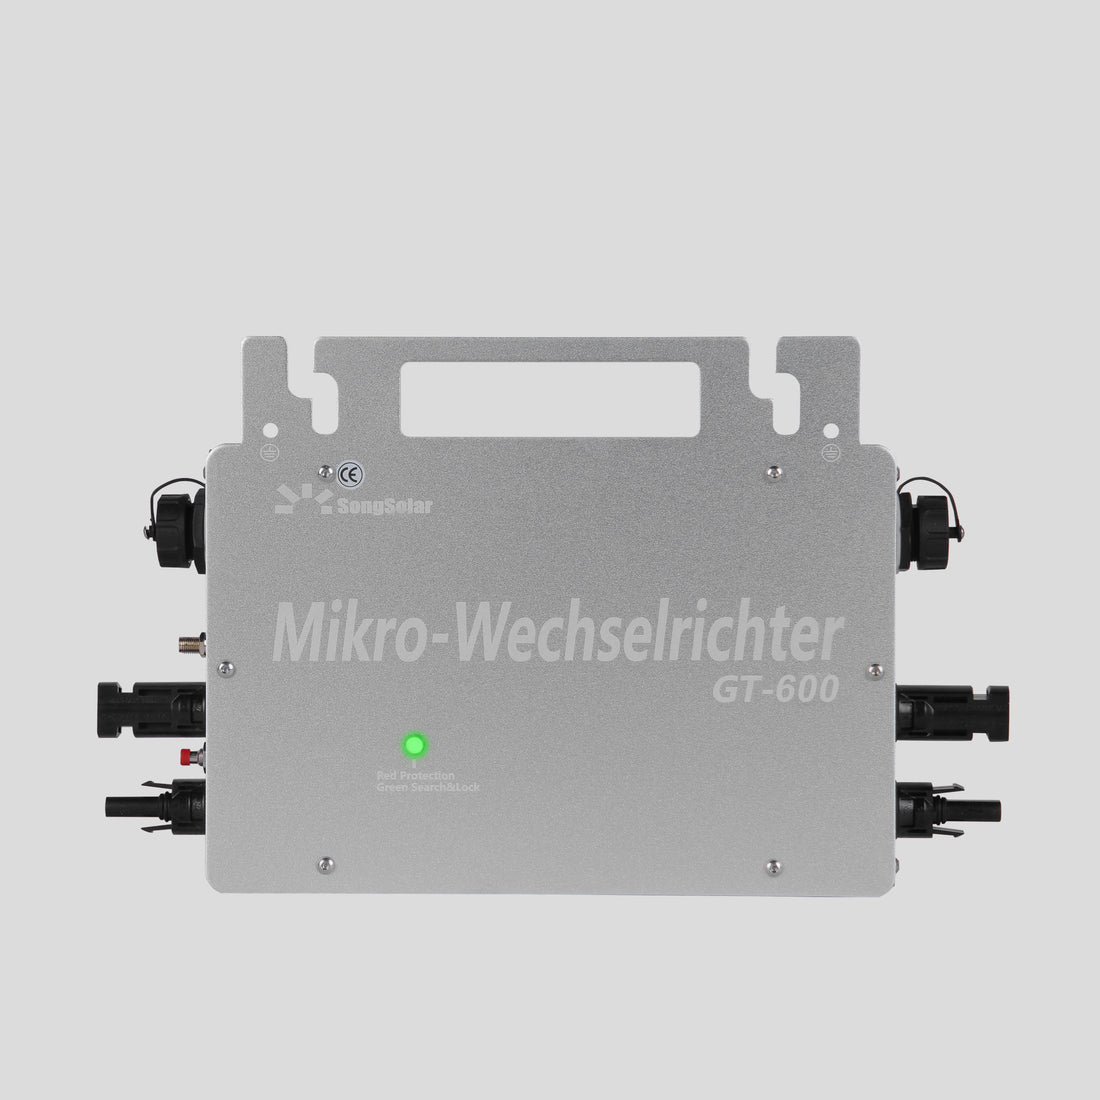 GTB 600W Reine Sinuswelle Smart Micro Wechselrichter Netzwechselrichter mit WIFI IP65